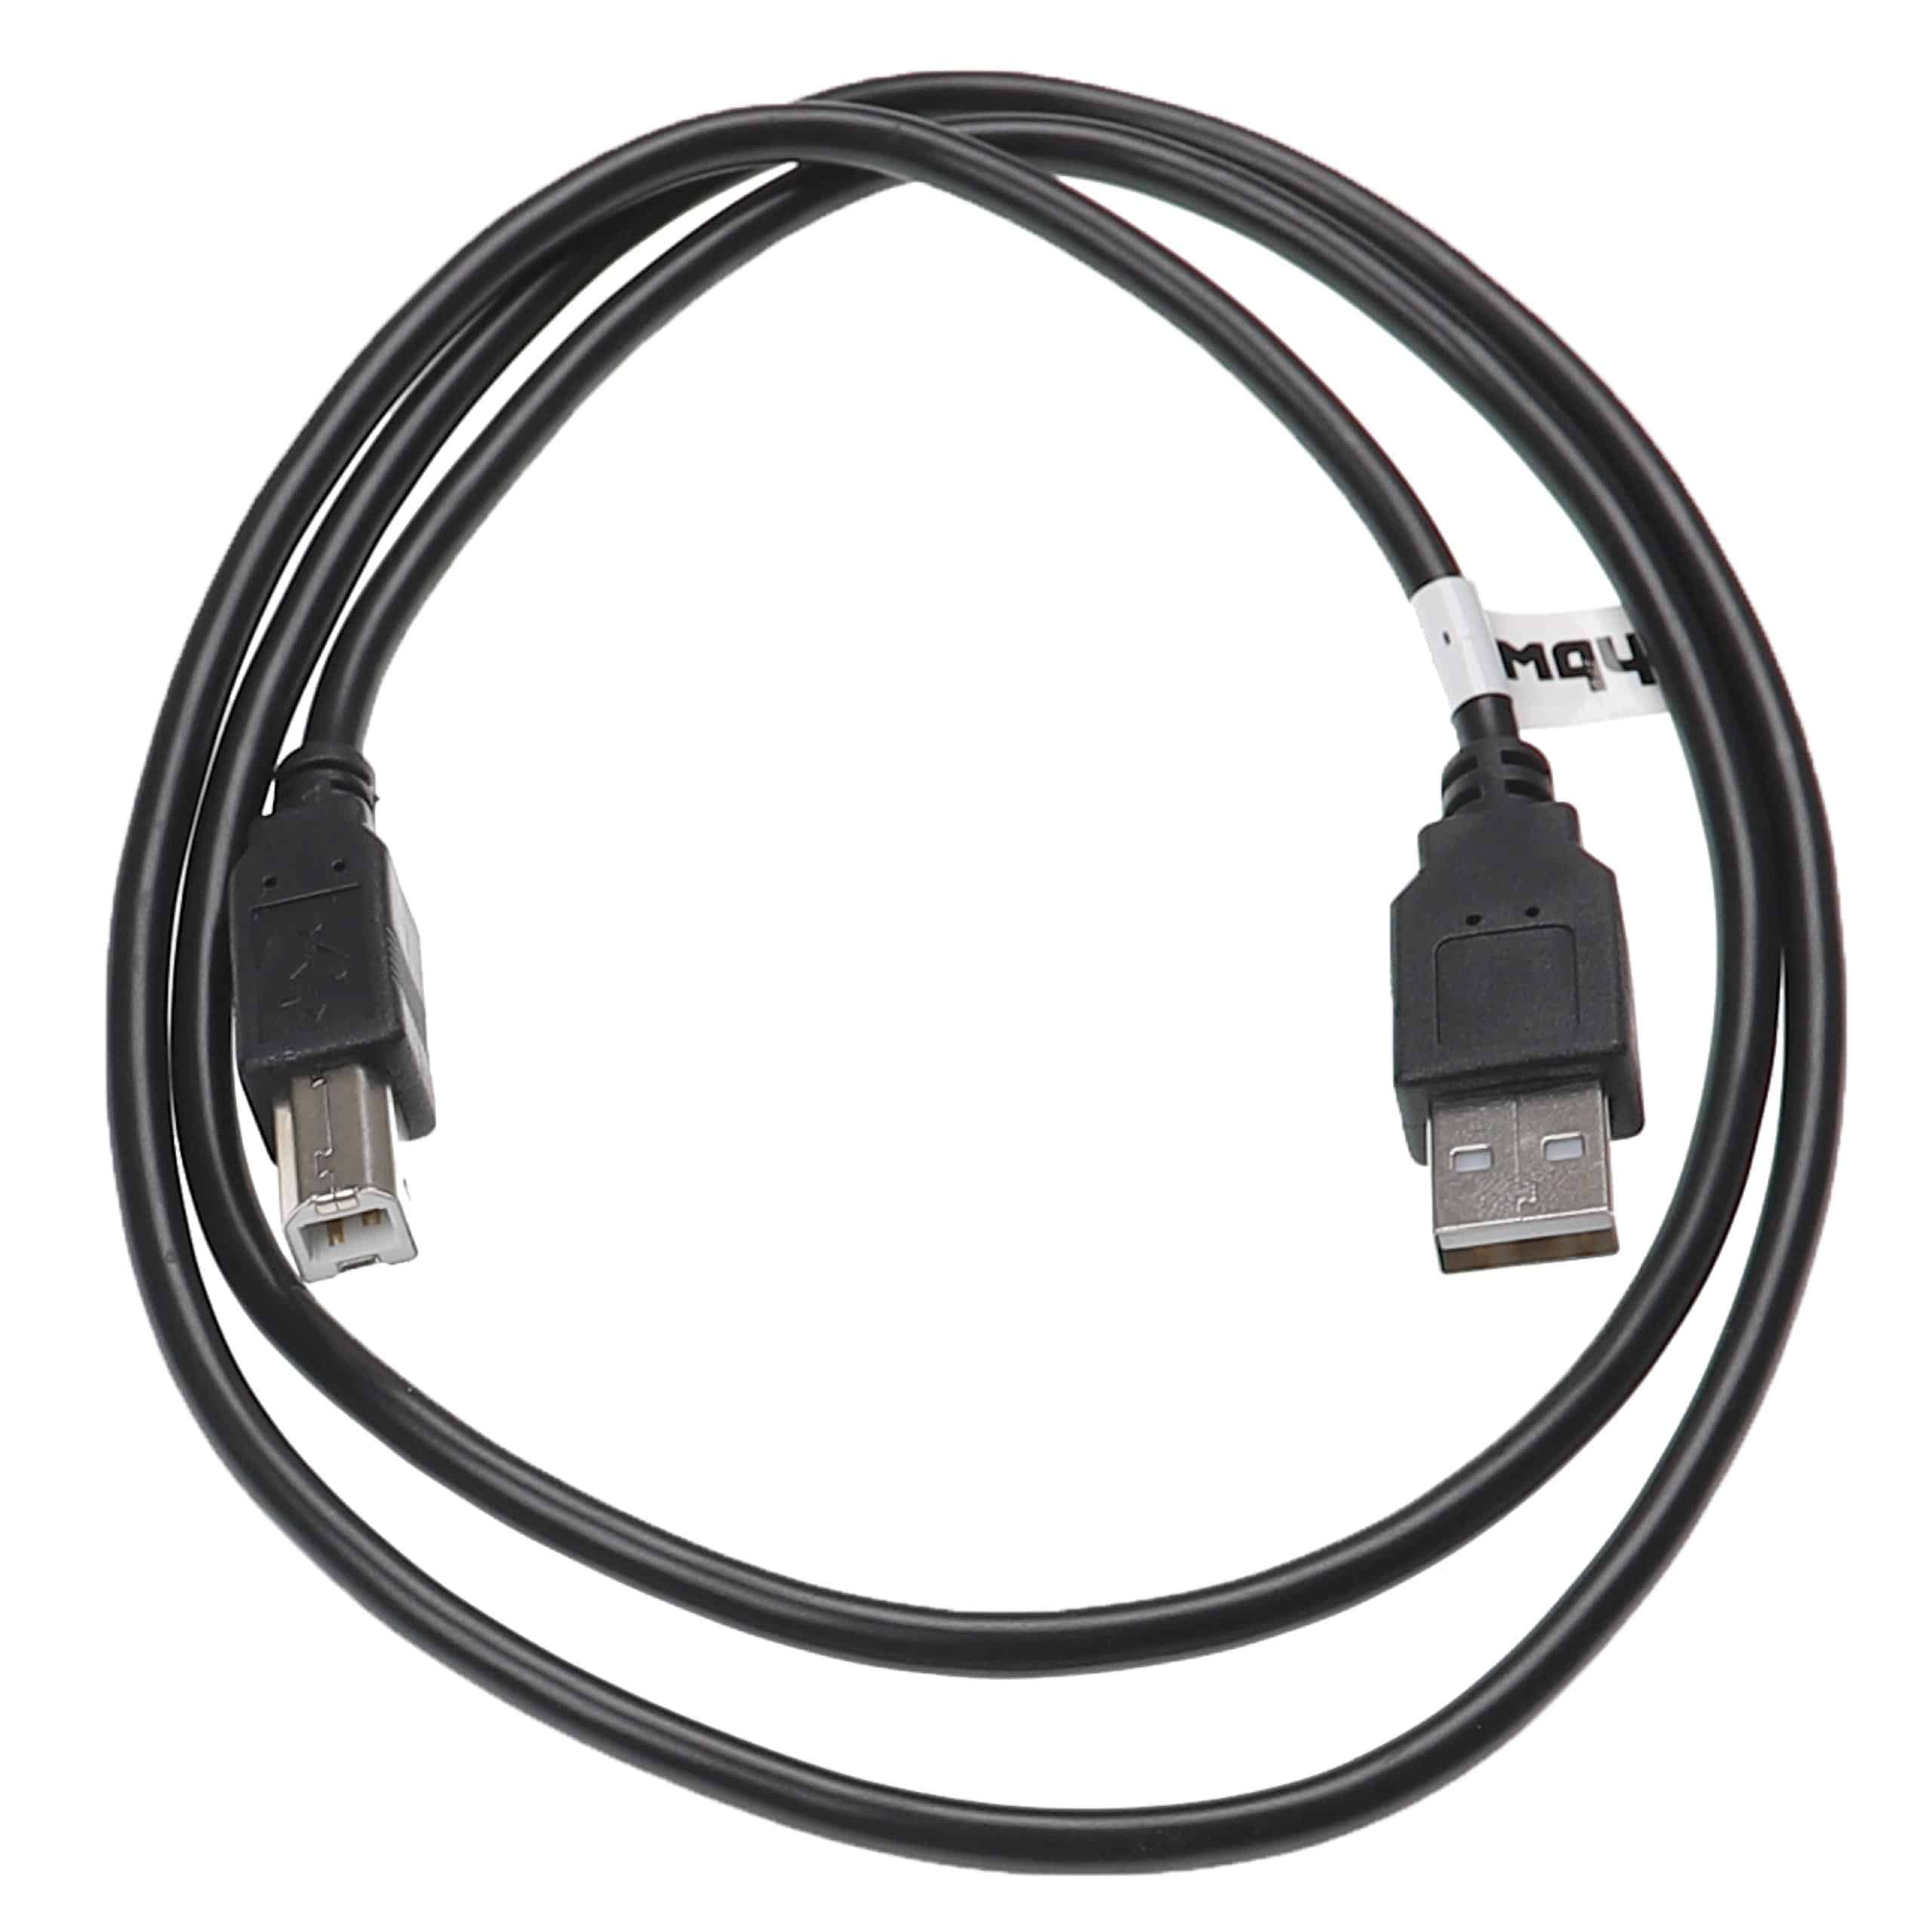 Cable adaptador USB A a USB B para impresora, escáner y fax - Cable de conexión